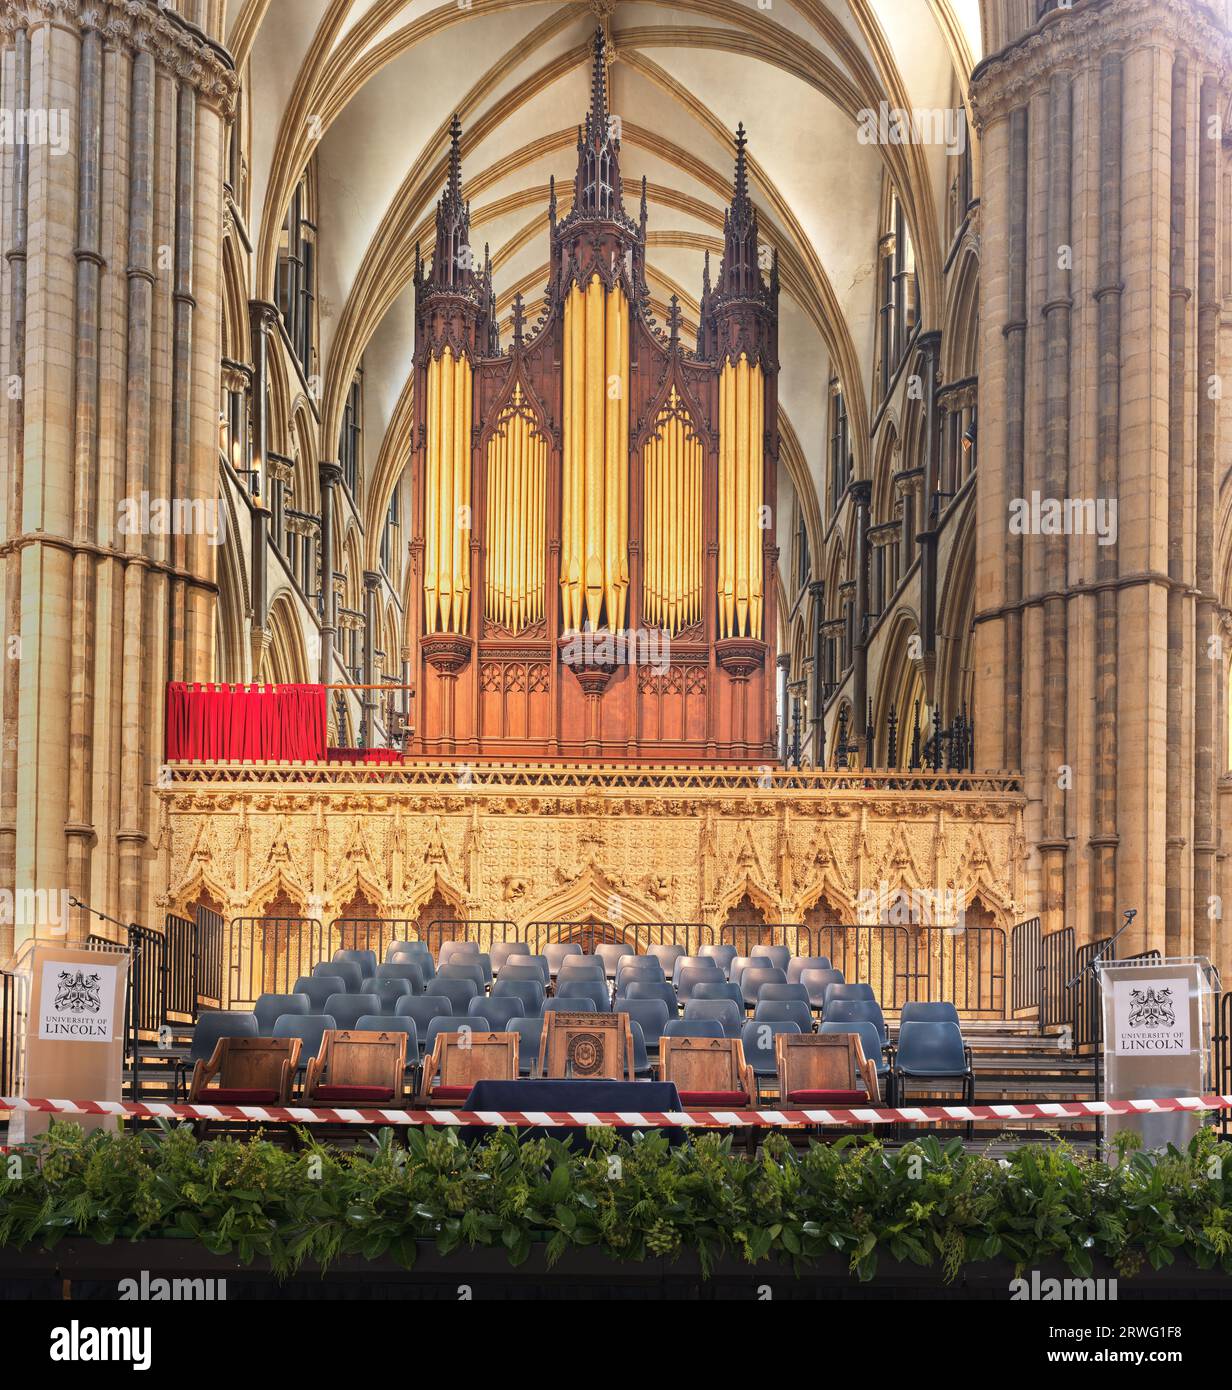 Schauplatz der Preisverleihung der University of Lincoln im Lande der von norman erbauten mittelalterlichen Kathedrale in Lincoln, England. Stockfoto